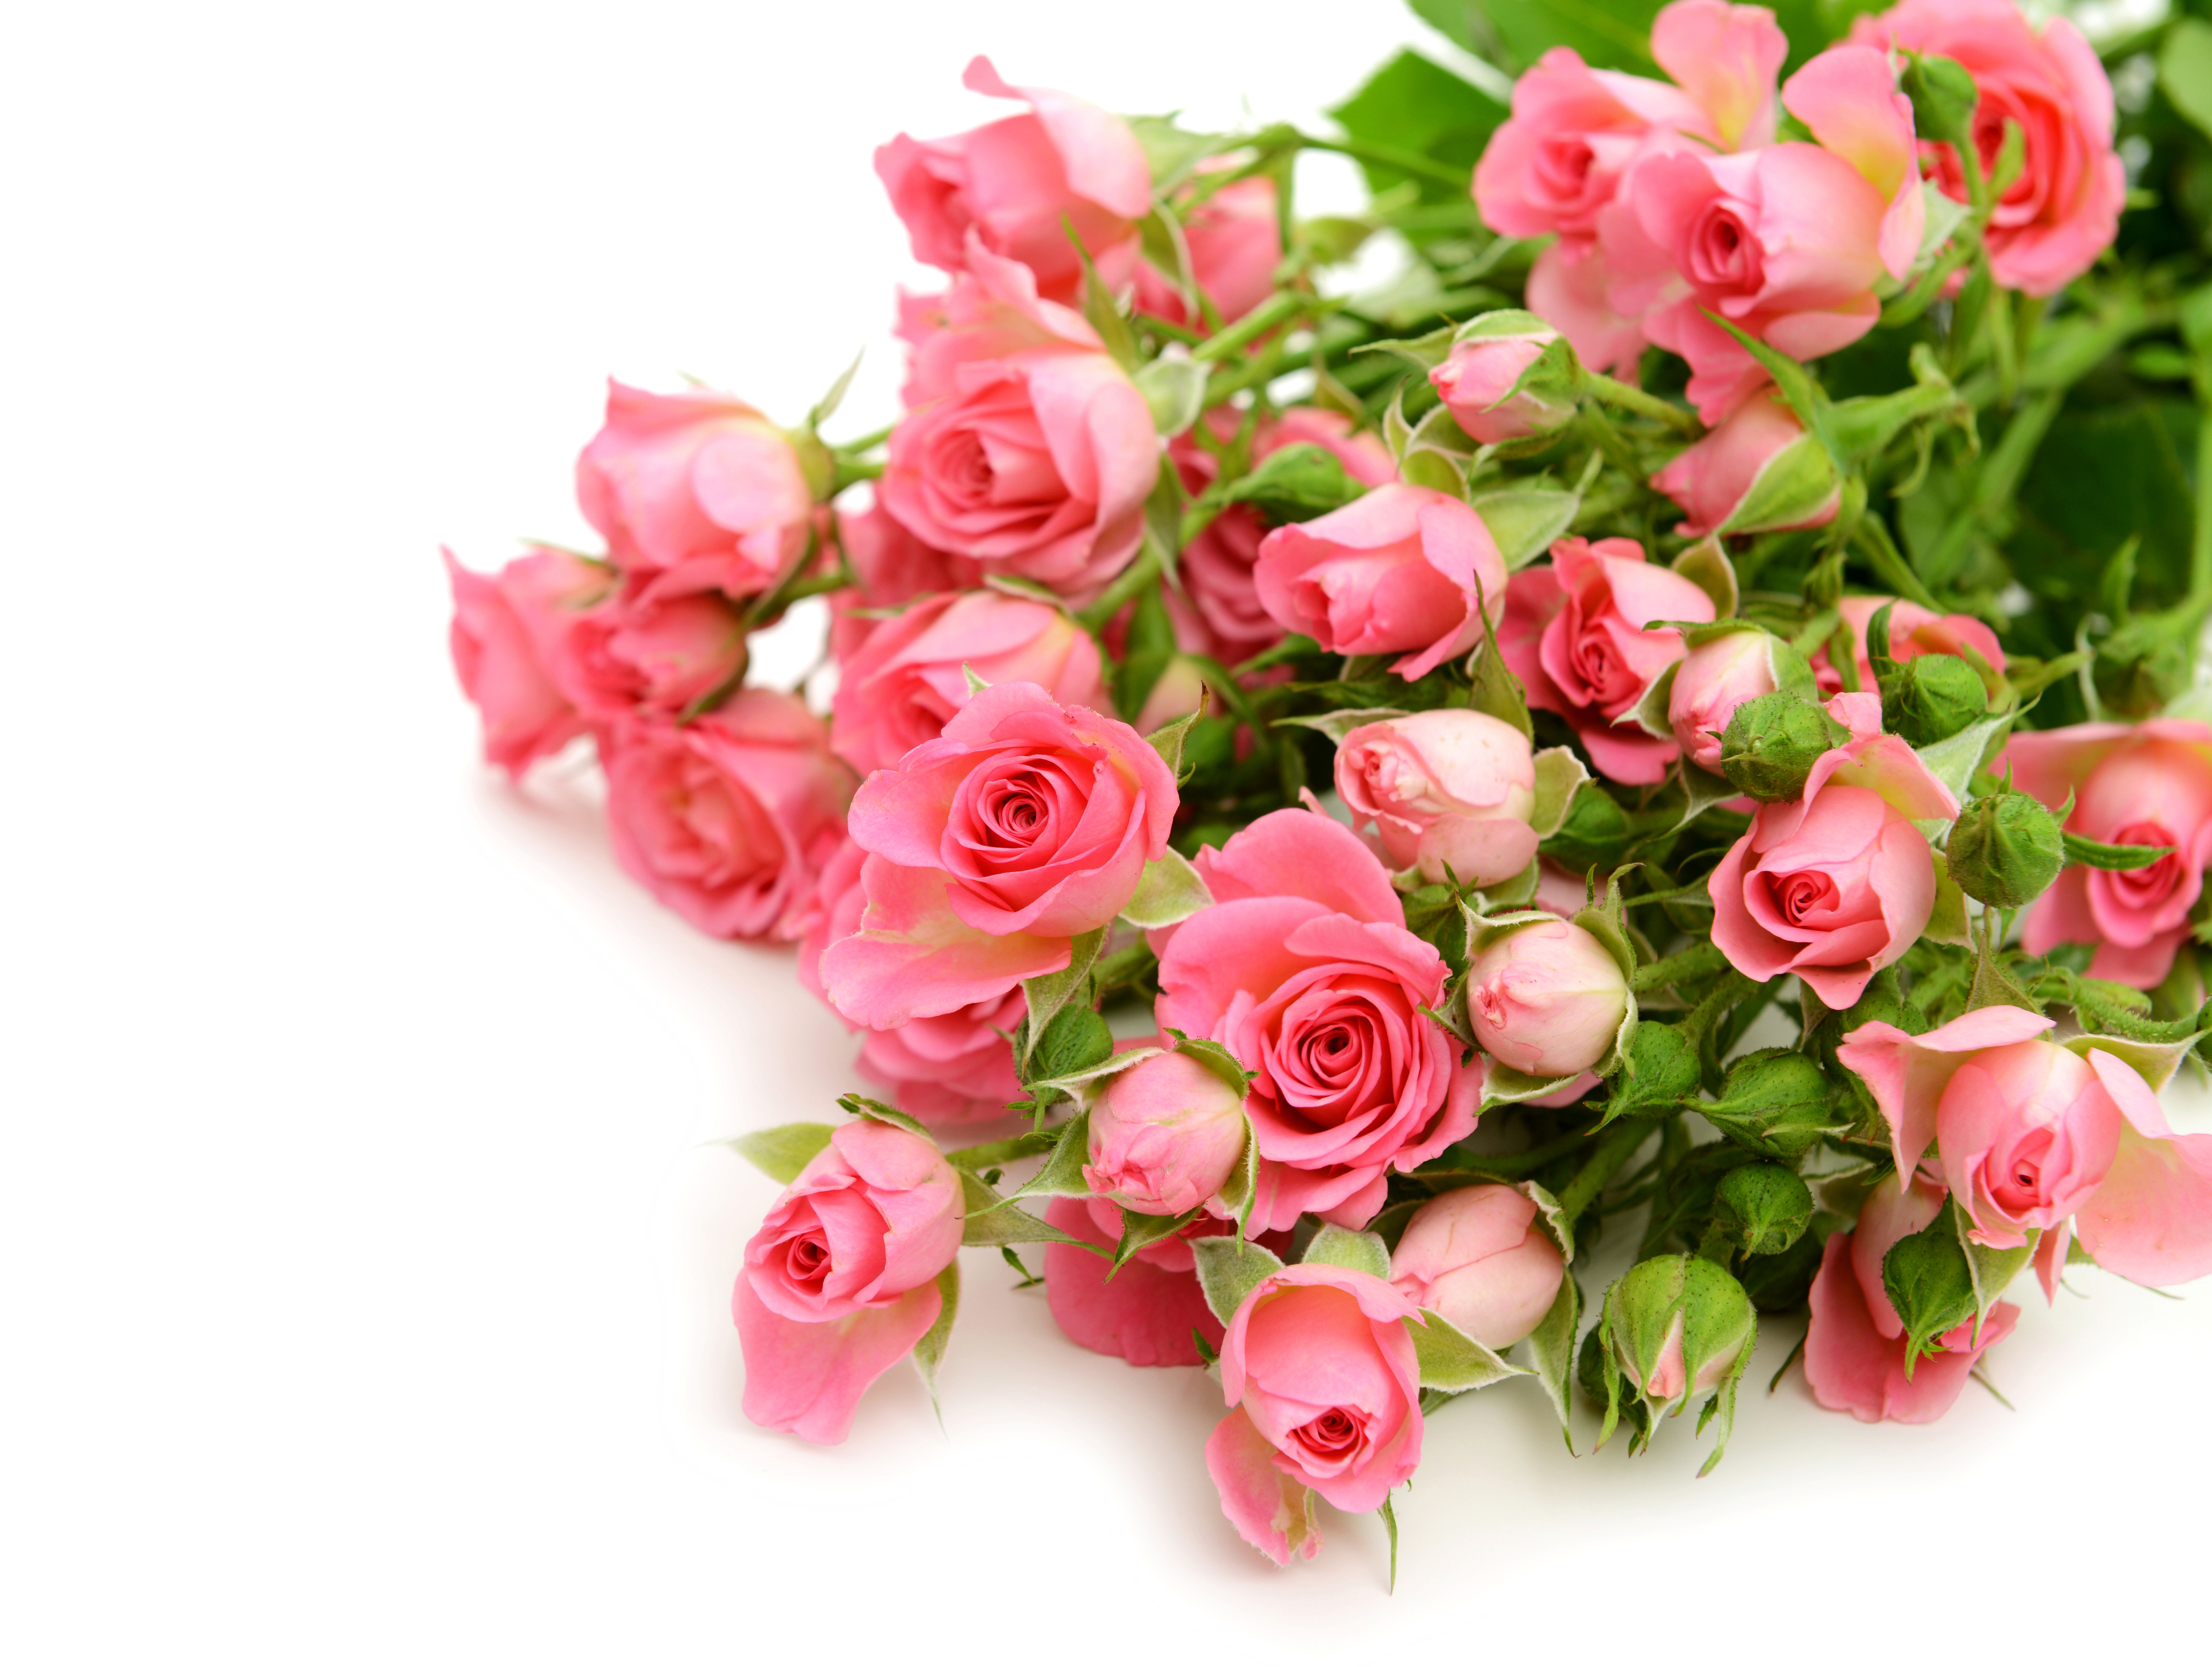 Foto Rose Rosa colore Fiori Molte 6368x4800 rosa fiore molti